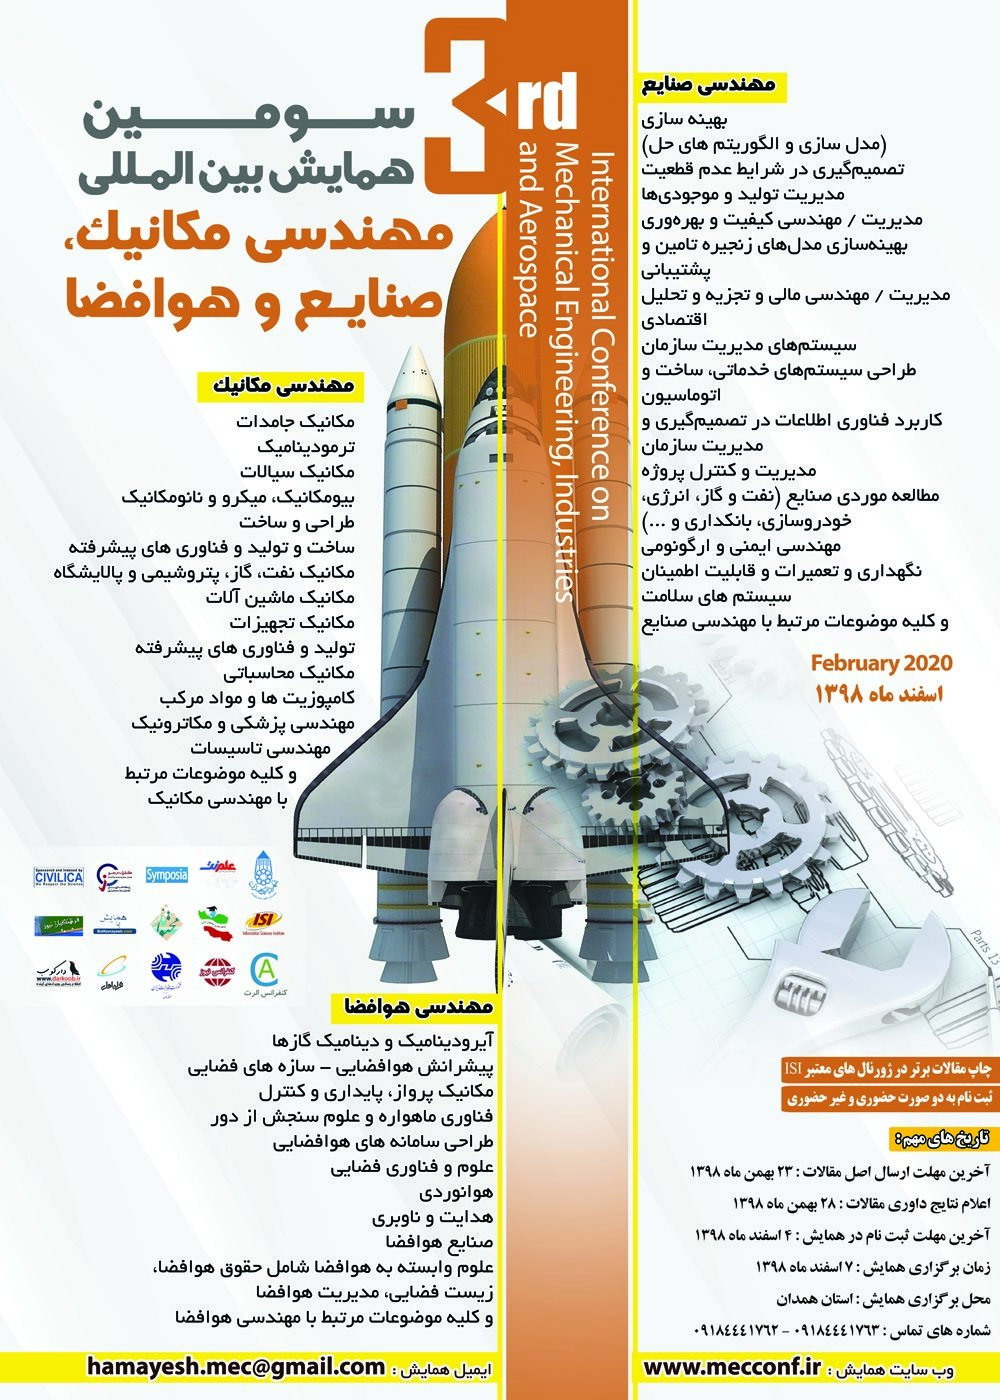 پوستر سومین همایش بین المللی مهندسی مکانیک، صنایع و هوافضا